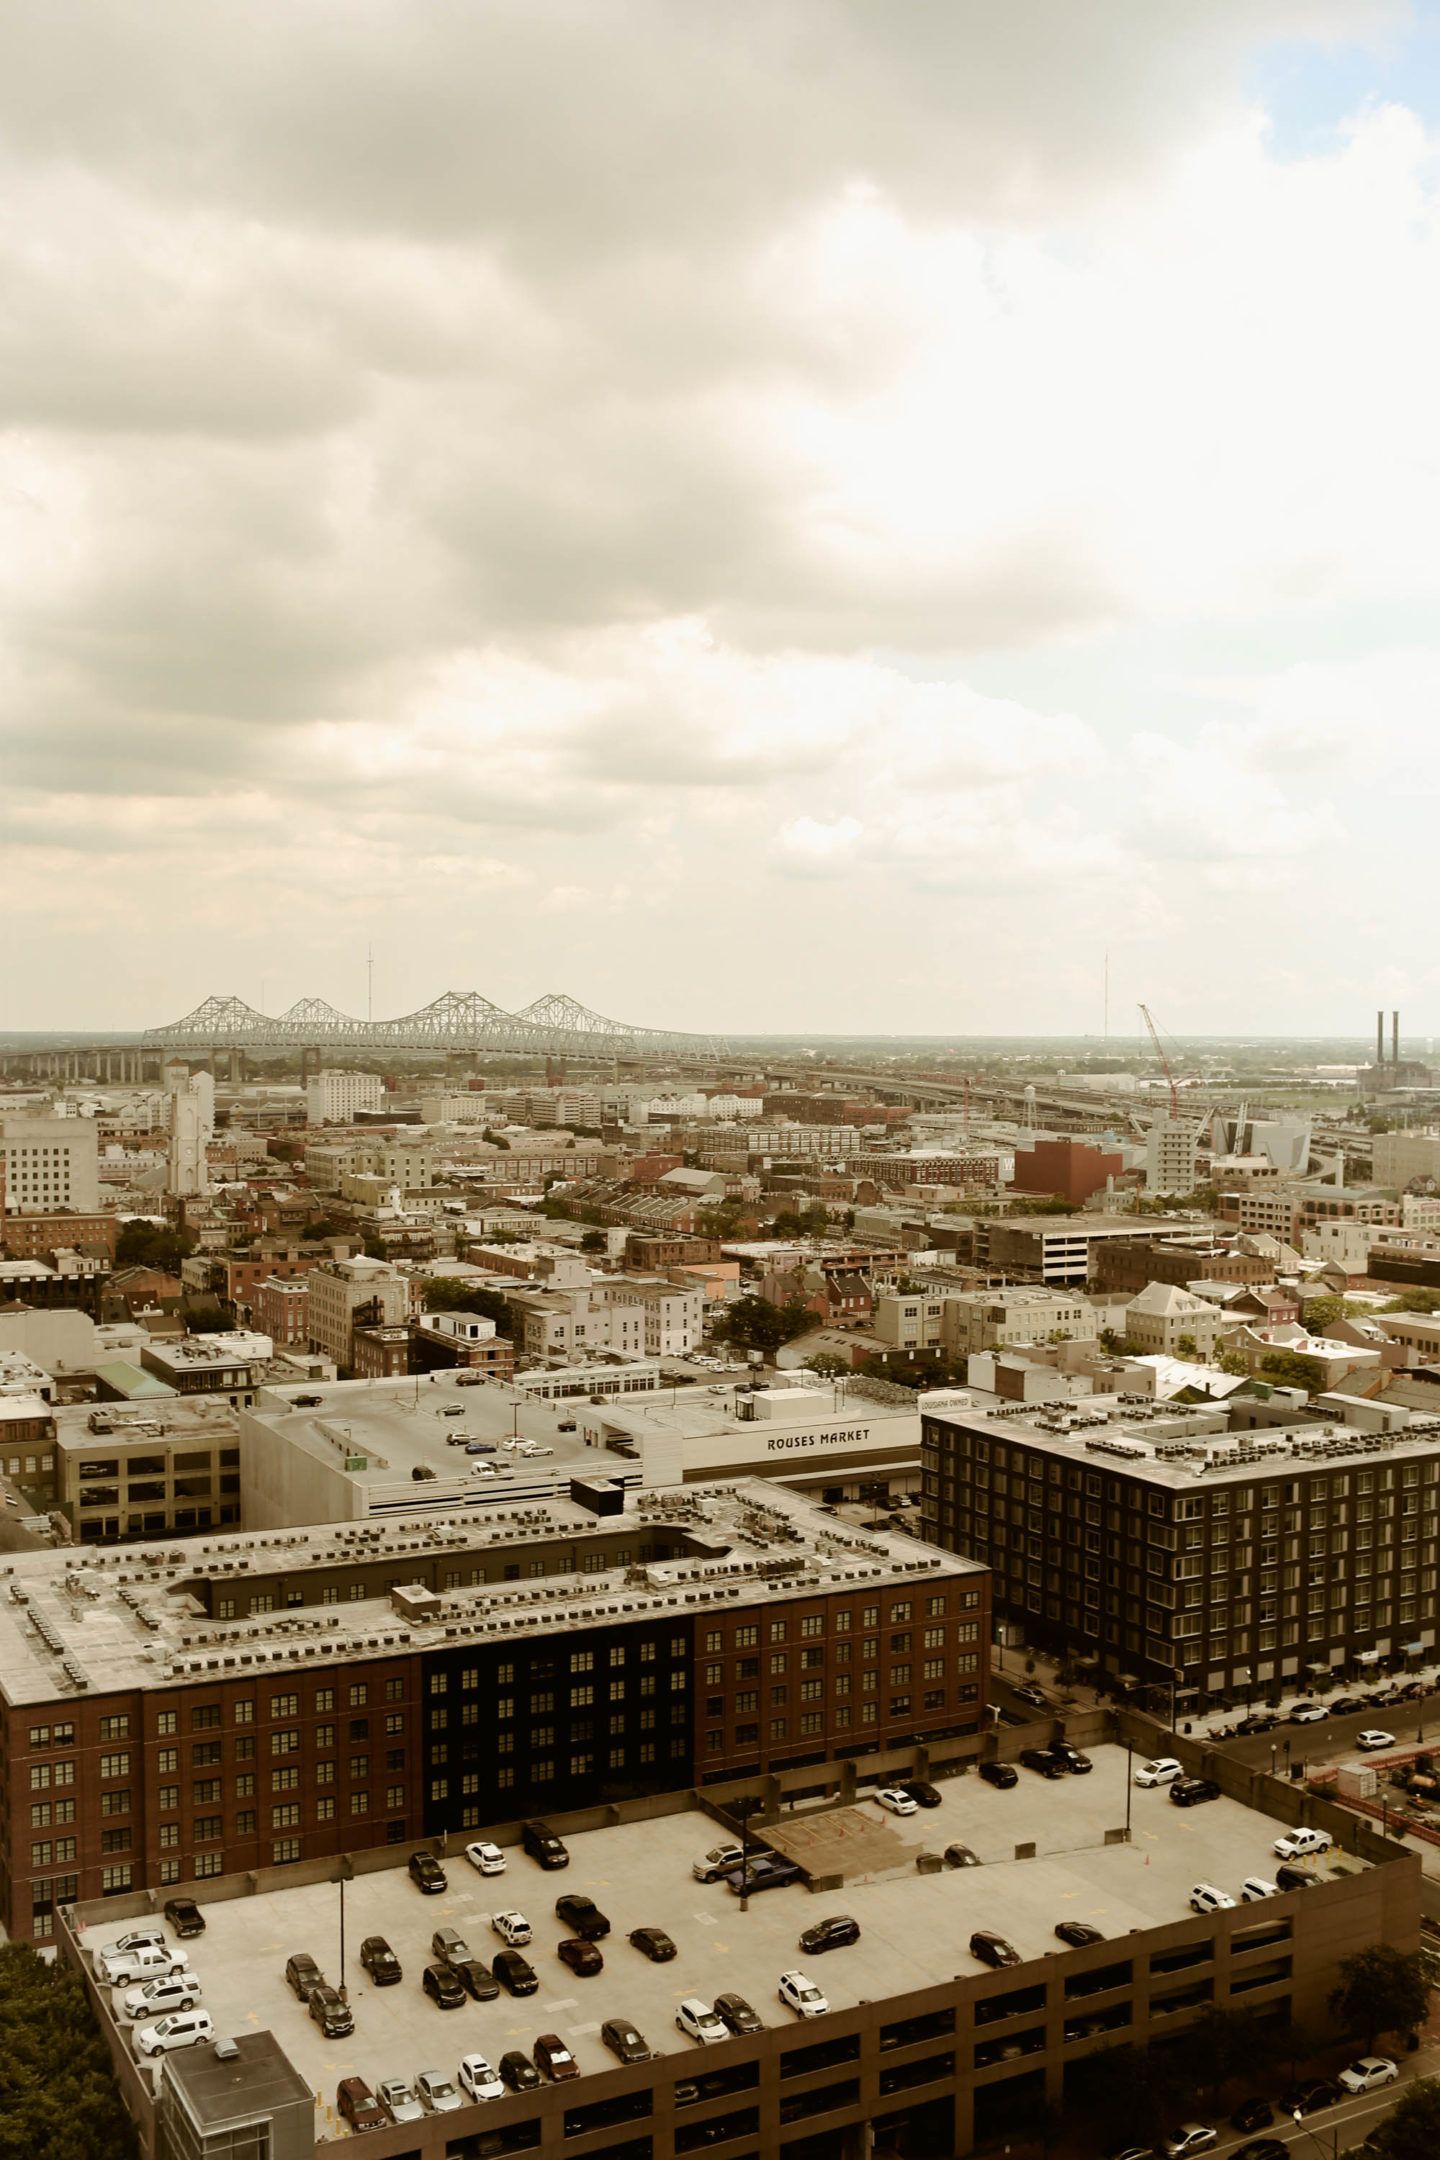 View of New Orleans from the Hyatt Regency